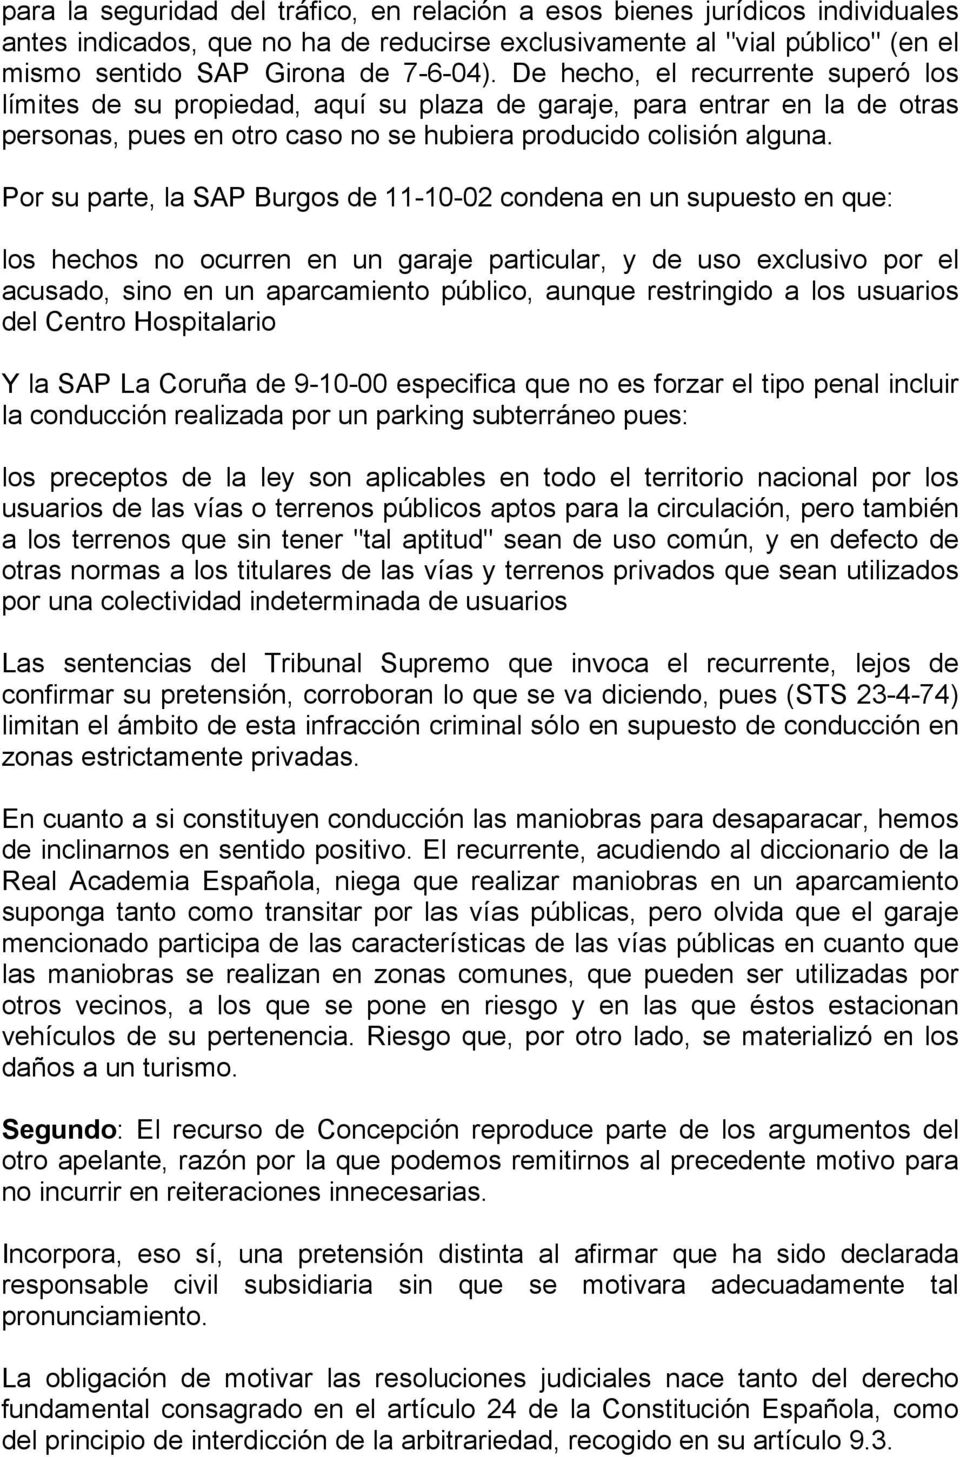 Por su parte, la SAP Burgos de 11-10-02 condena en un supuesto en que: los hechos no ocurren en un garaje particular, y de uso exclusivo por el acusado, sino en un aparcamiento público, aunque